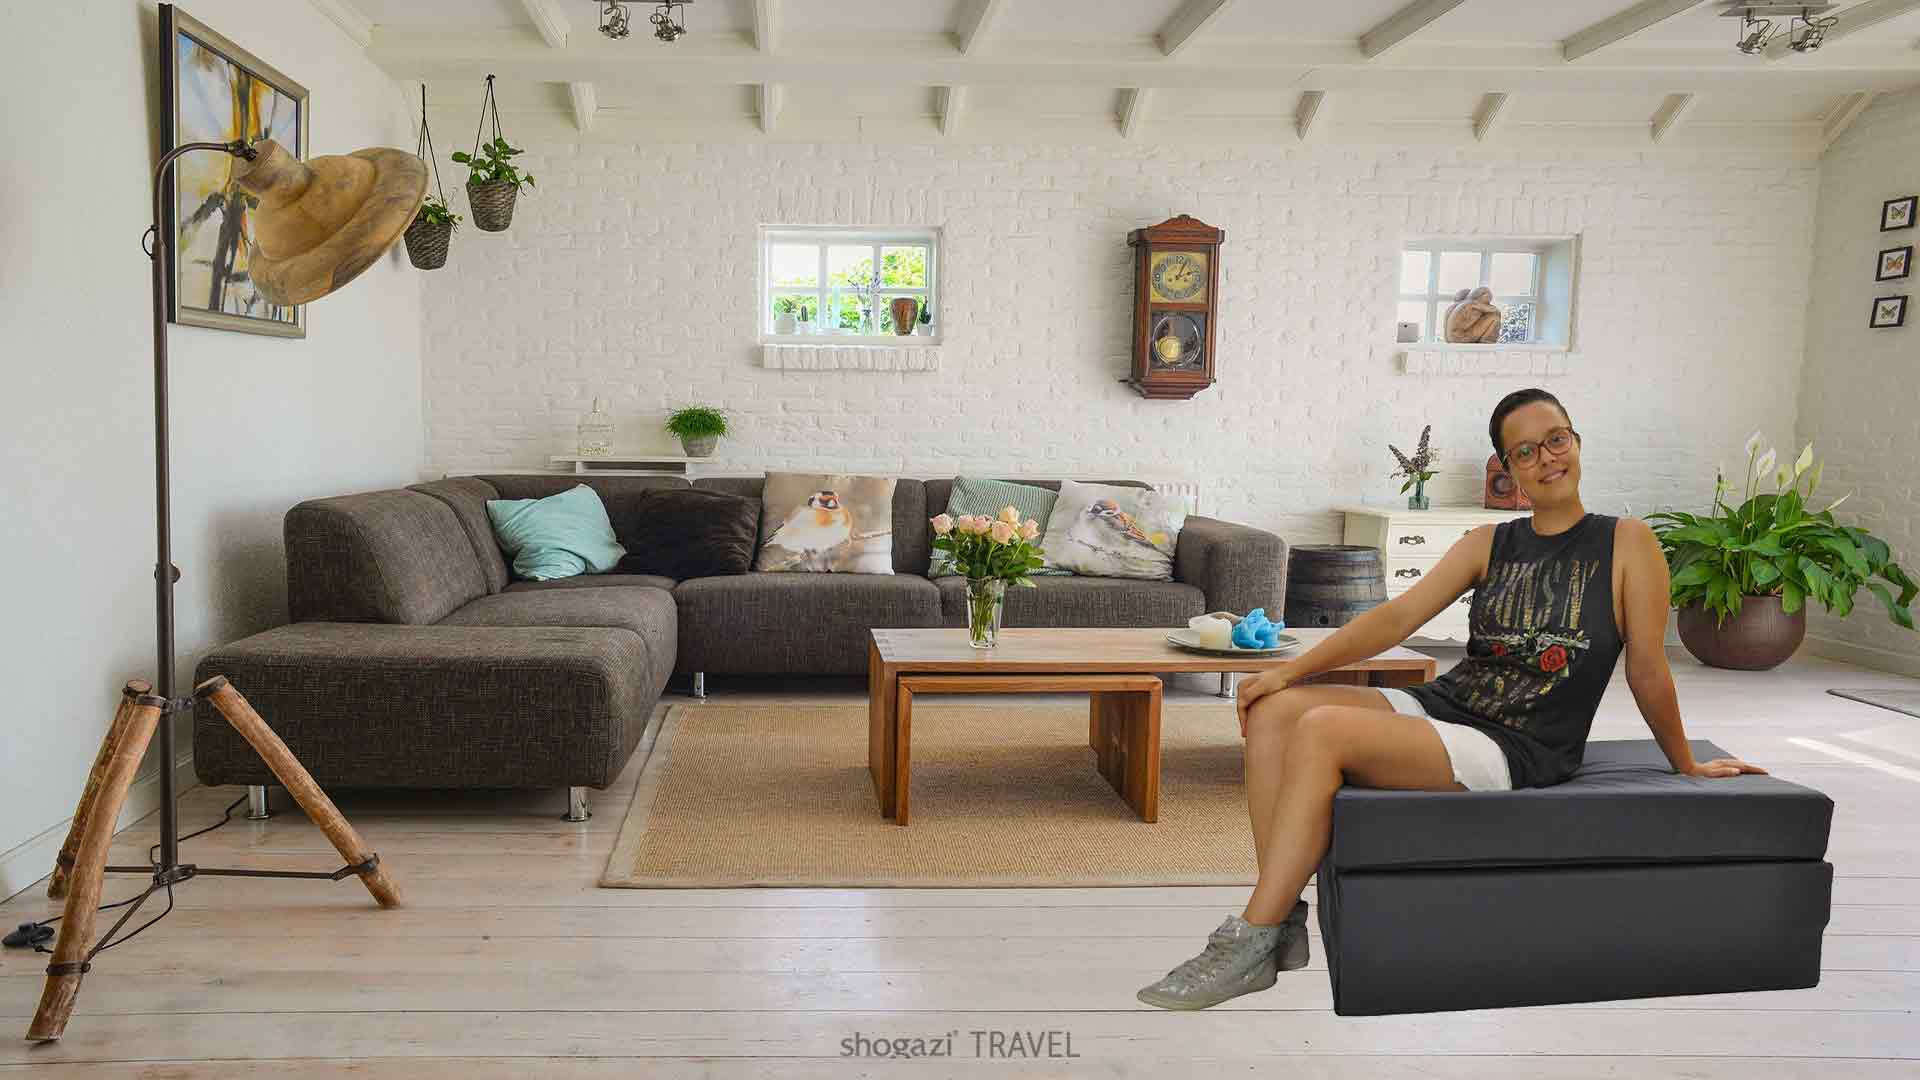 Gästematratze als Sitzgelegenheit für das Wohnzimmer in anthrazit